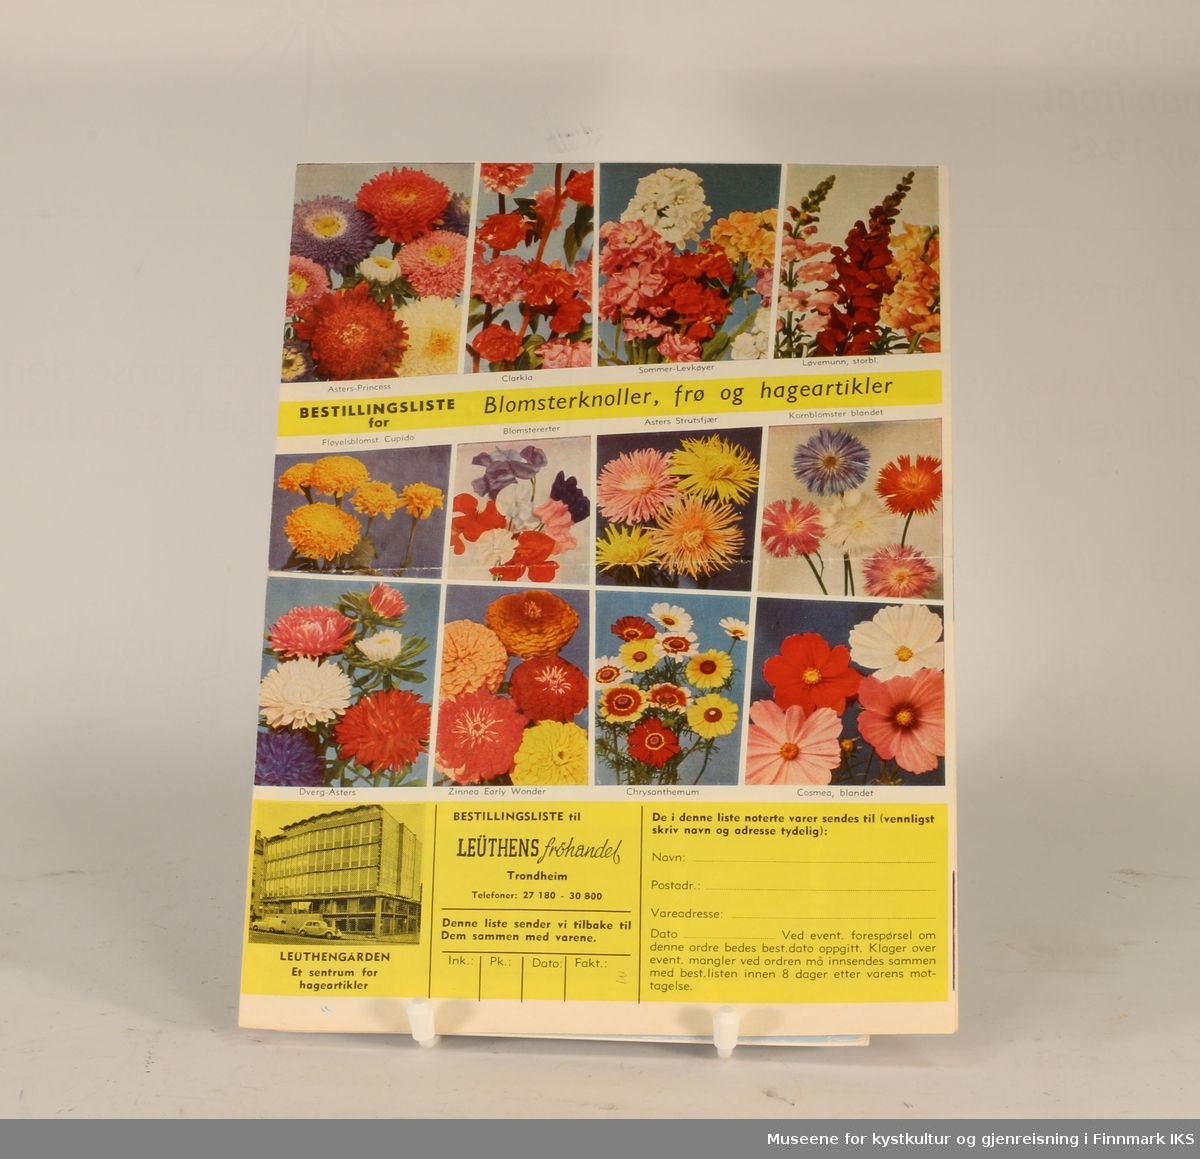 Reklamebrosjyre/bestillingsliste for blomsterknoller, frø og hageartikler fra 1960-tallet. 

Fargebilder.